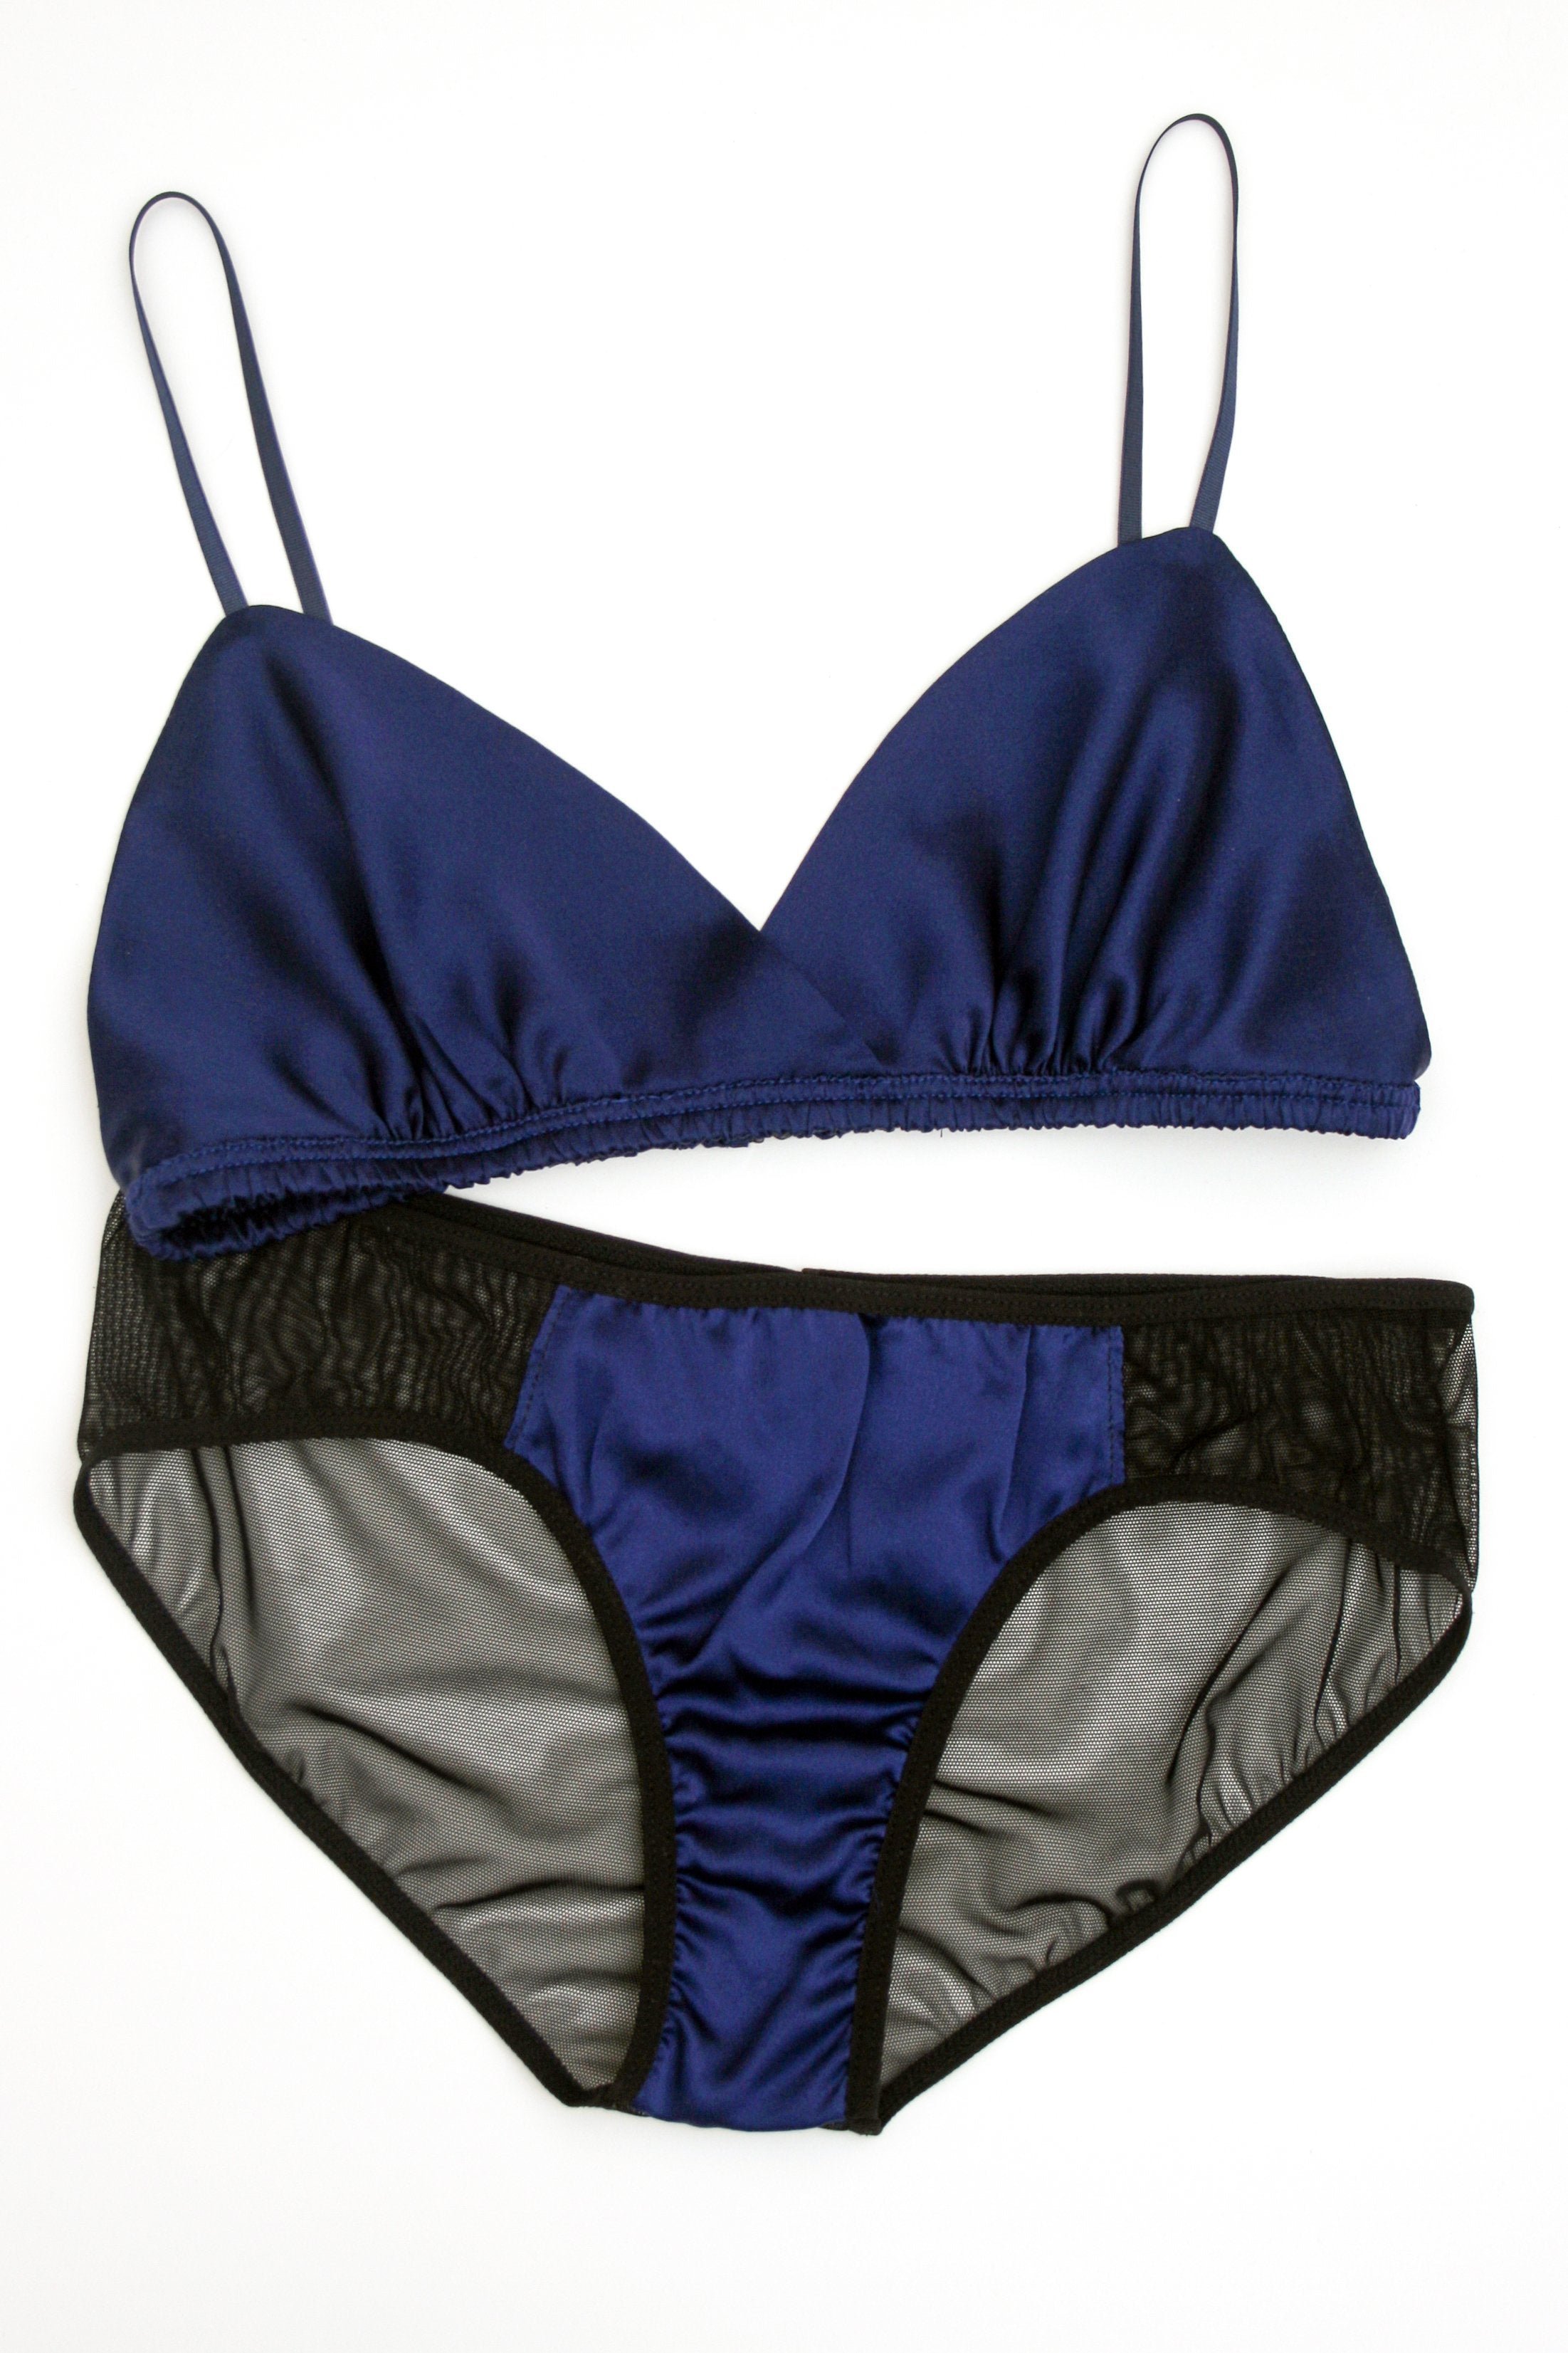 Nisanca Navy blue Women Underwear & Nightwear Styles, Prices